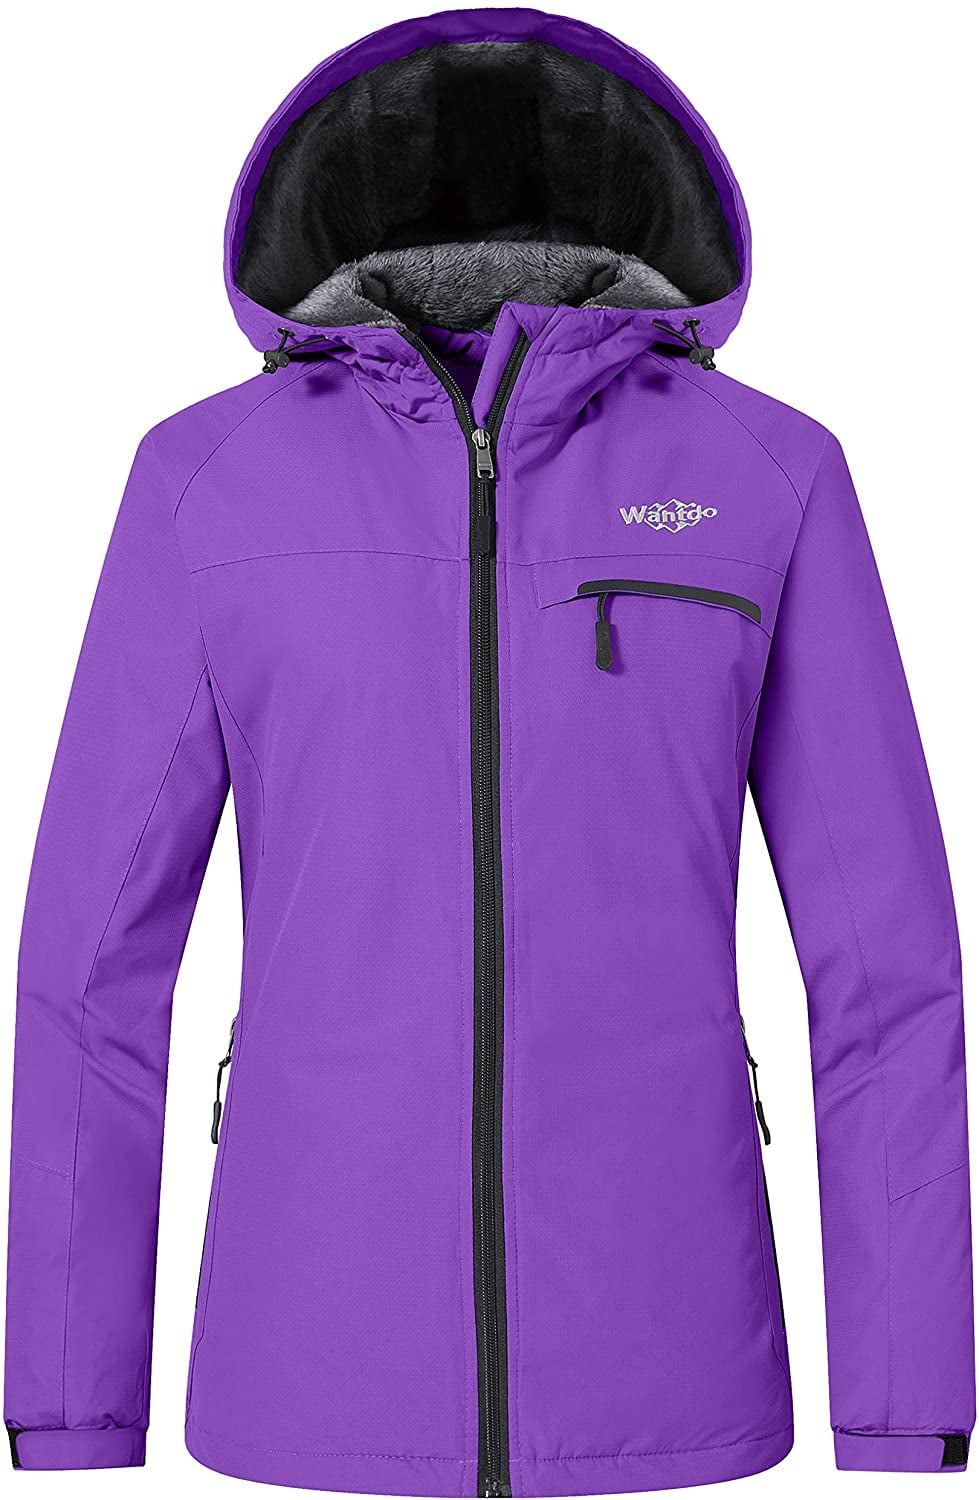 Wantdo Women's Mountain Waterproof Ski Jacket Windproof Snowboarding Jackets Warm Winter Snow Coat Fleece Raincoat